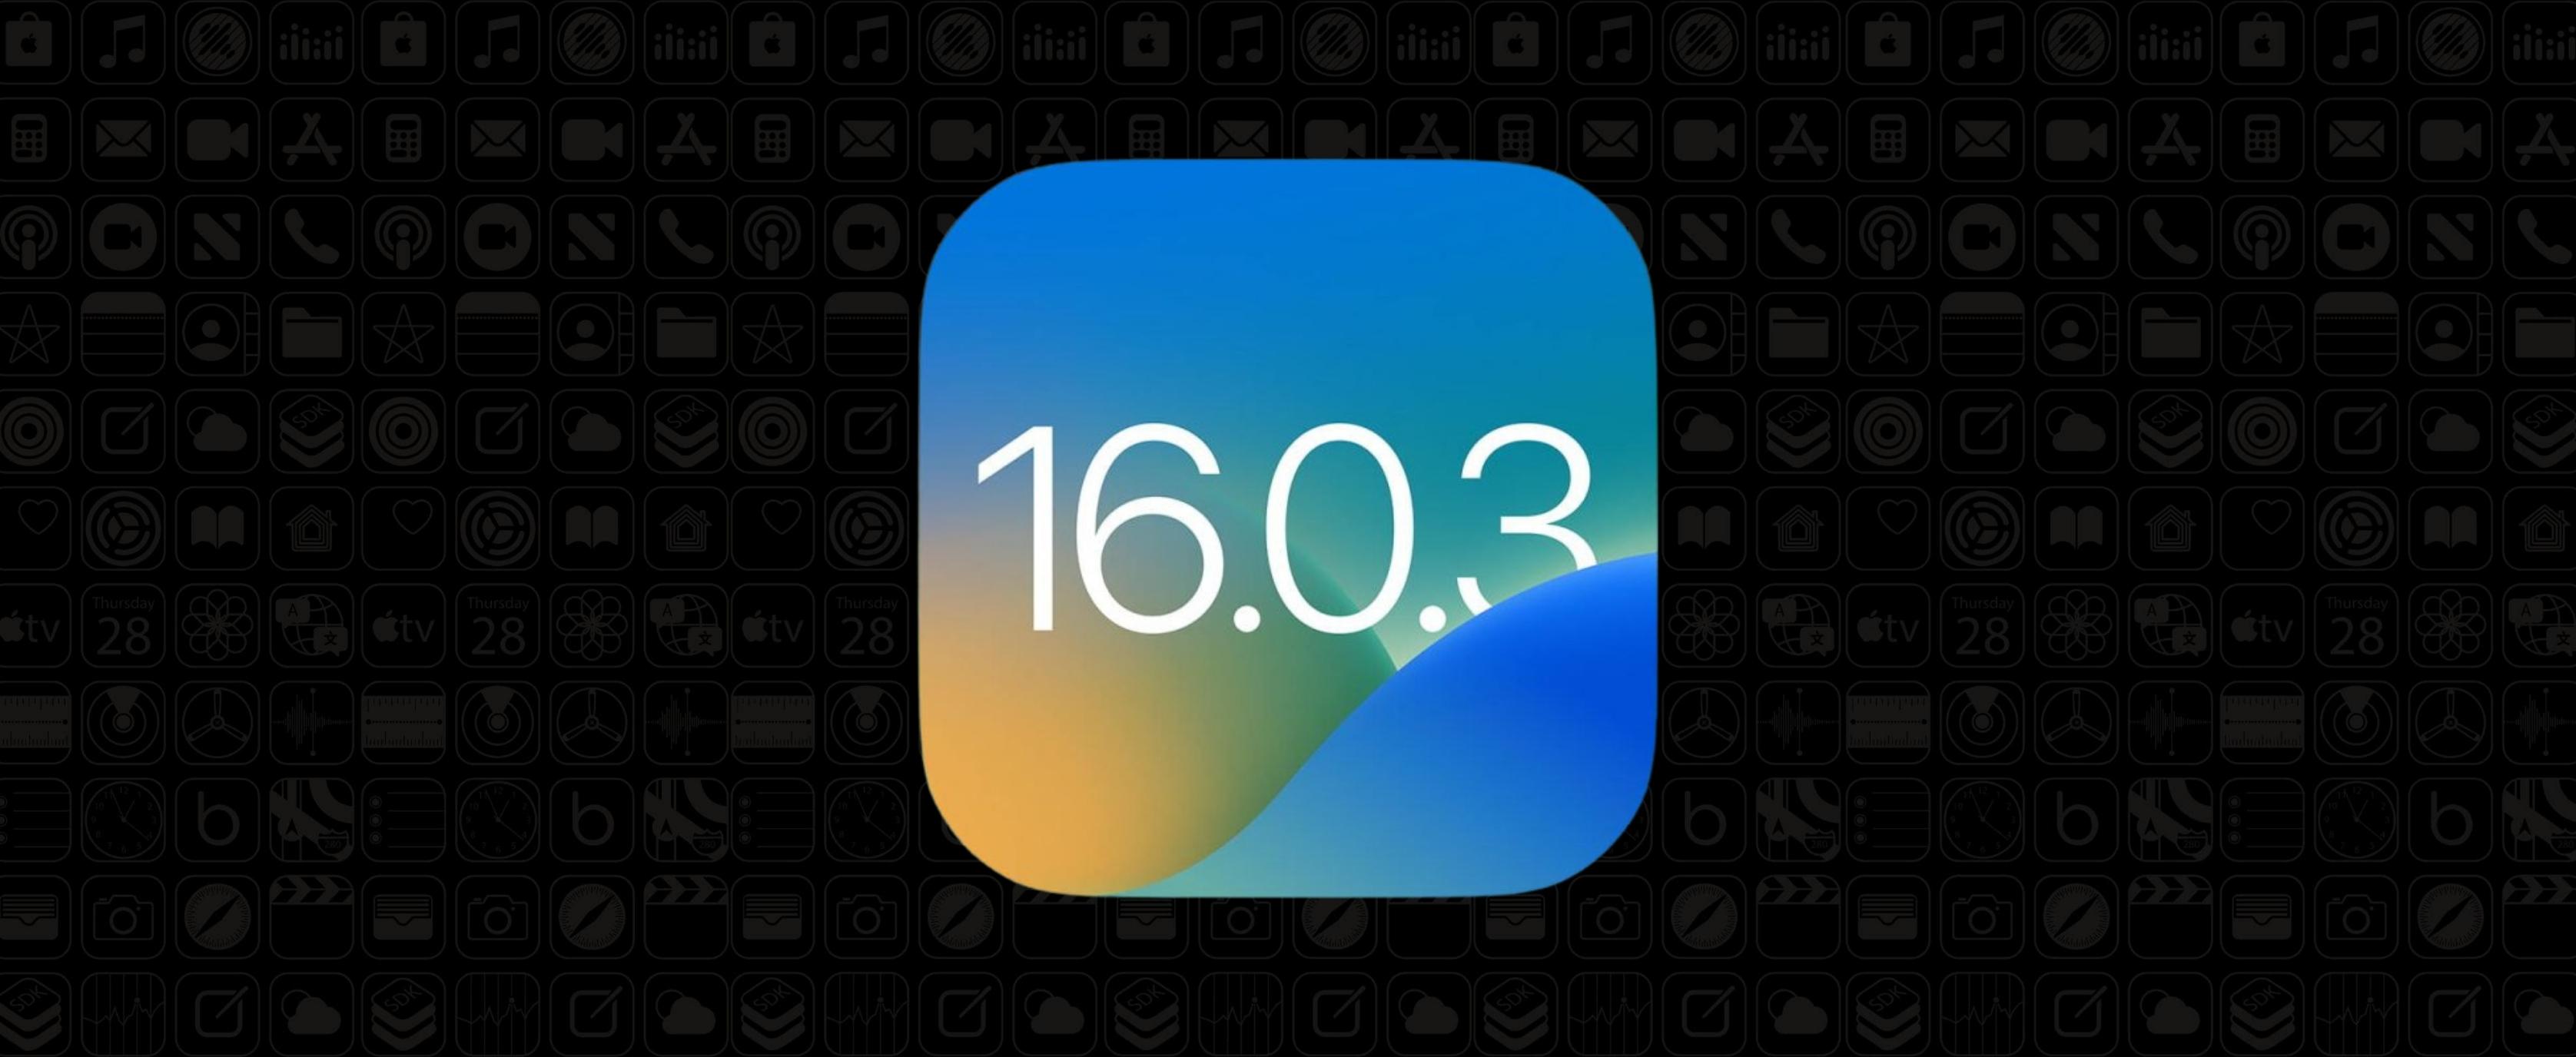  Apple випускає оновлення iOS 16.0.3 — що нового?